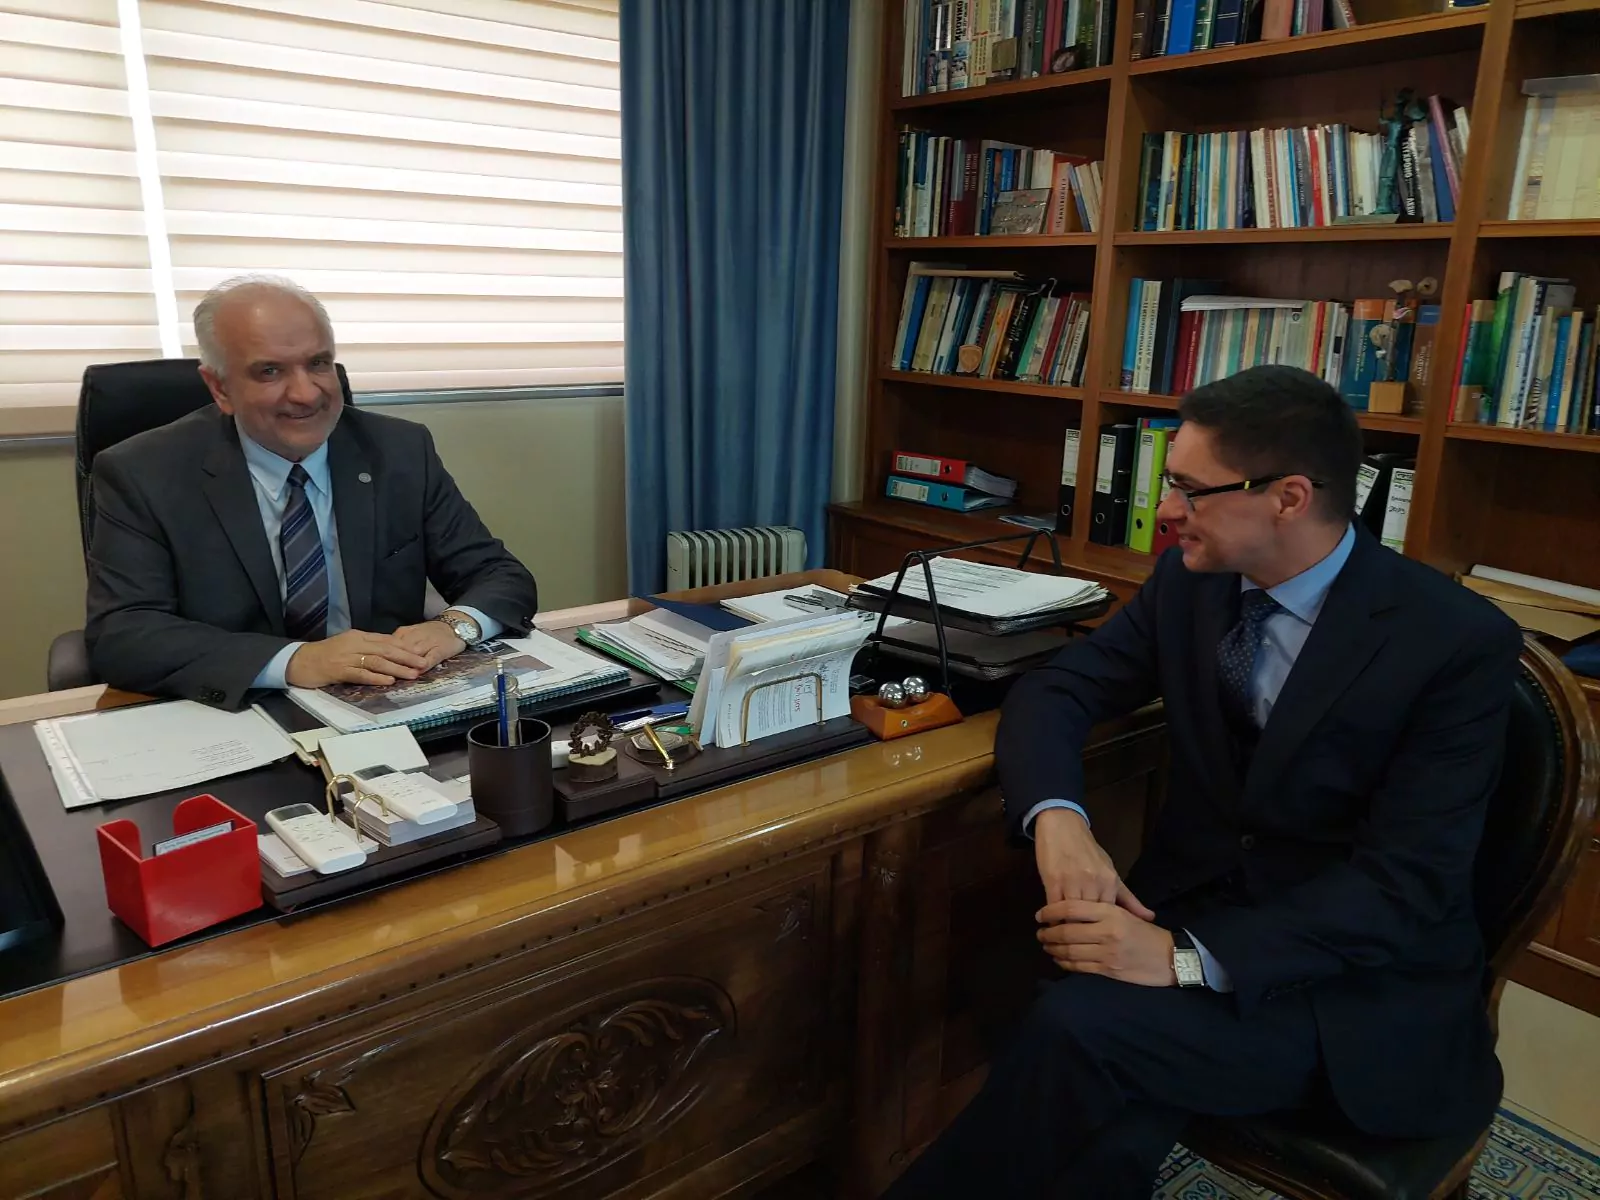 Μεσολόγγι: H συνάντηση του δημάρχου Κώστα Λύρου με τον Πρέσβη της Πολωνίας - ΦΩΤΟ